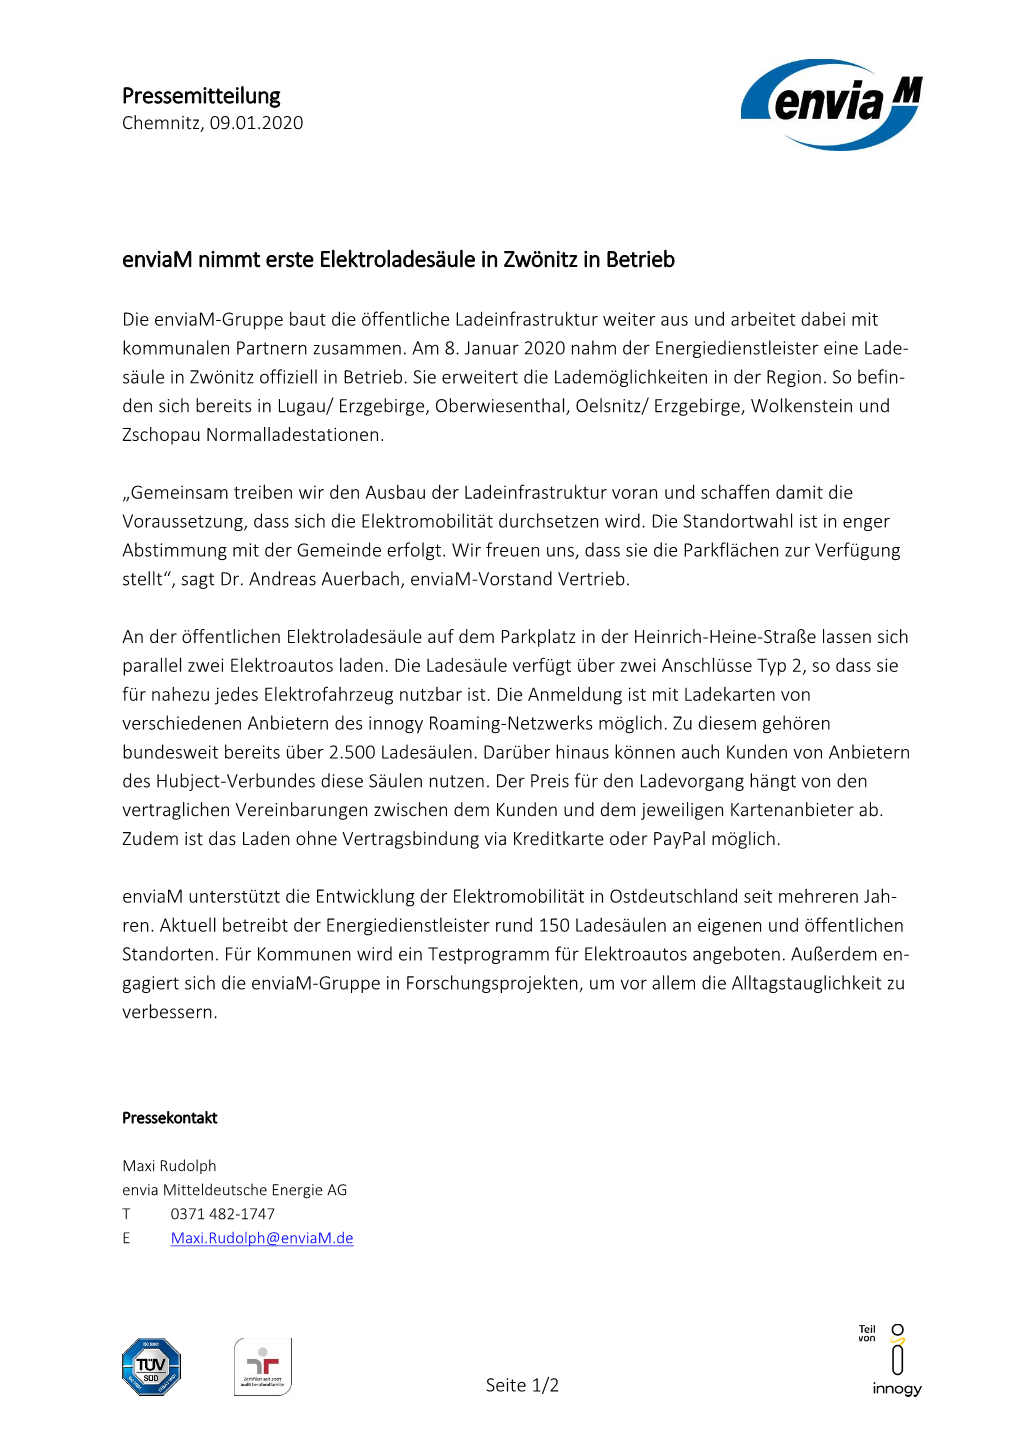 Pressemitteilung Enviam Nimmt Erste Elektroladesäule in Zwönitz in Betrieb